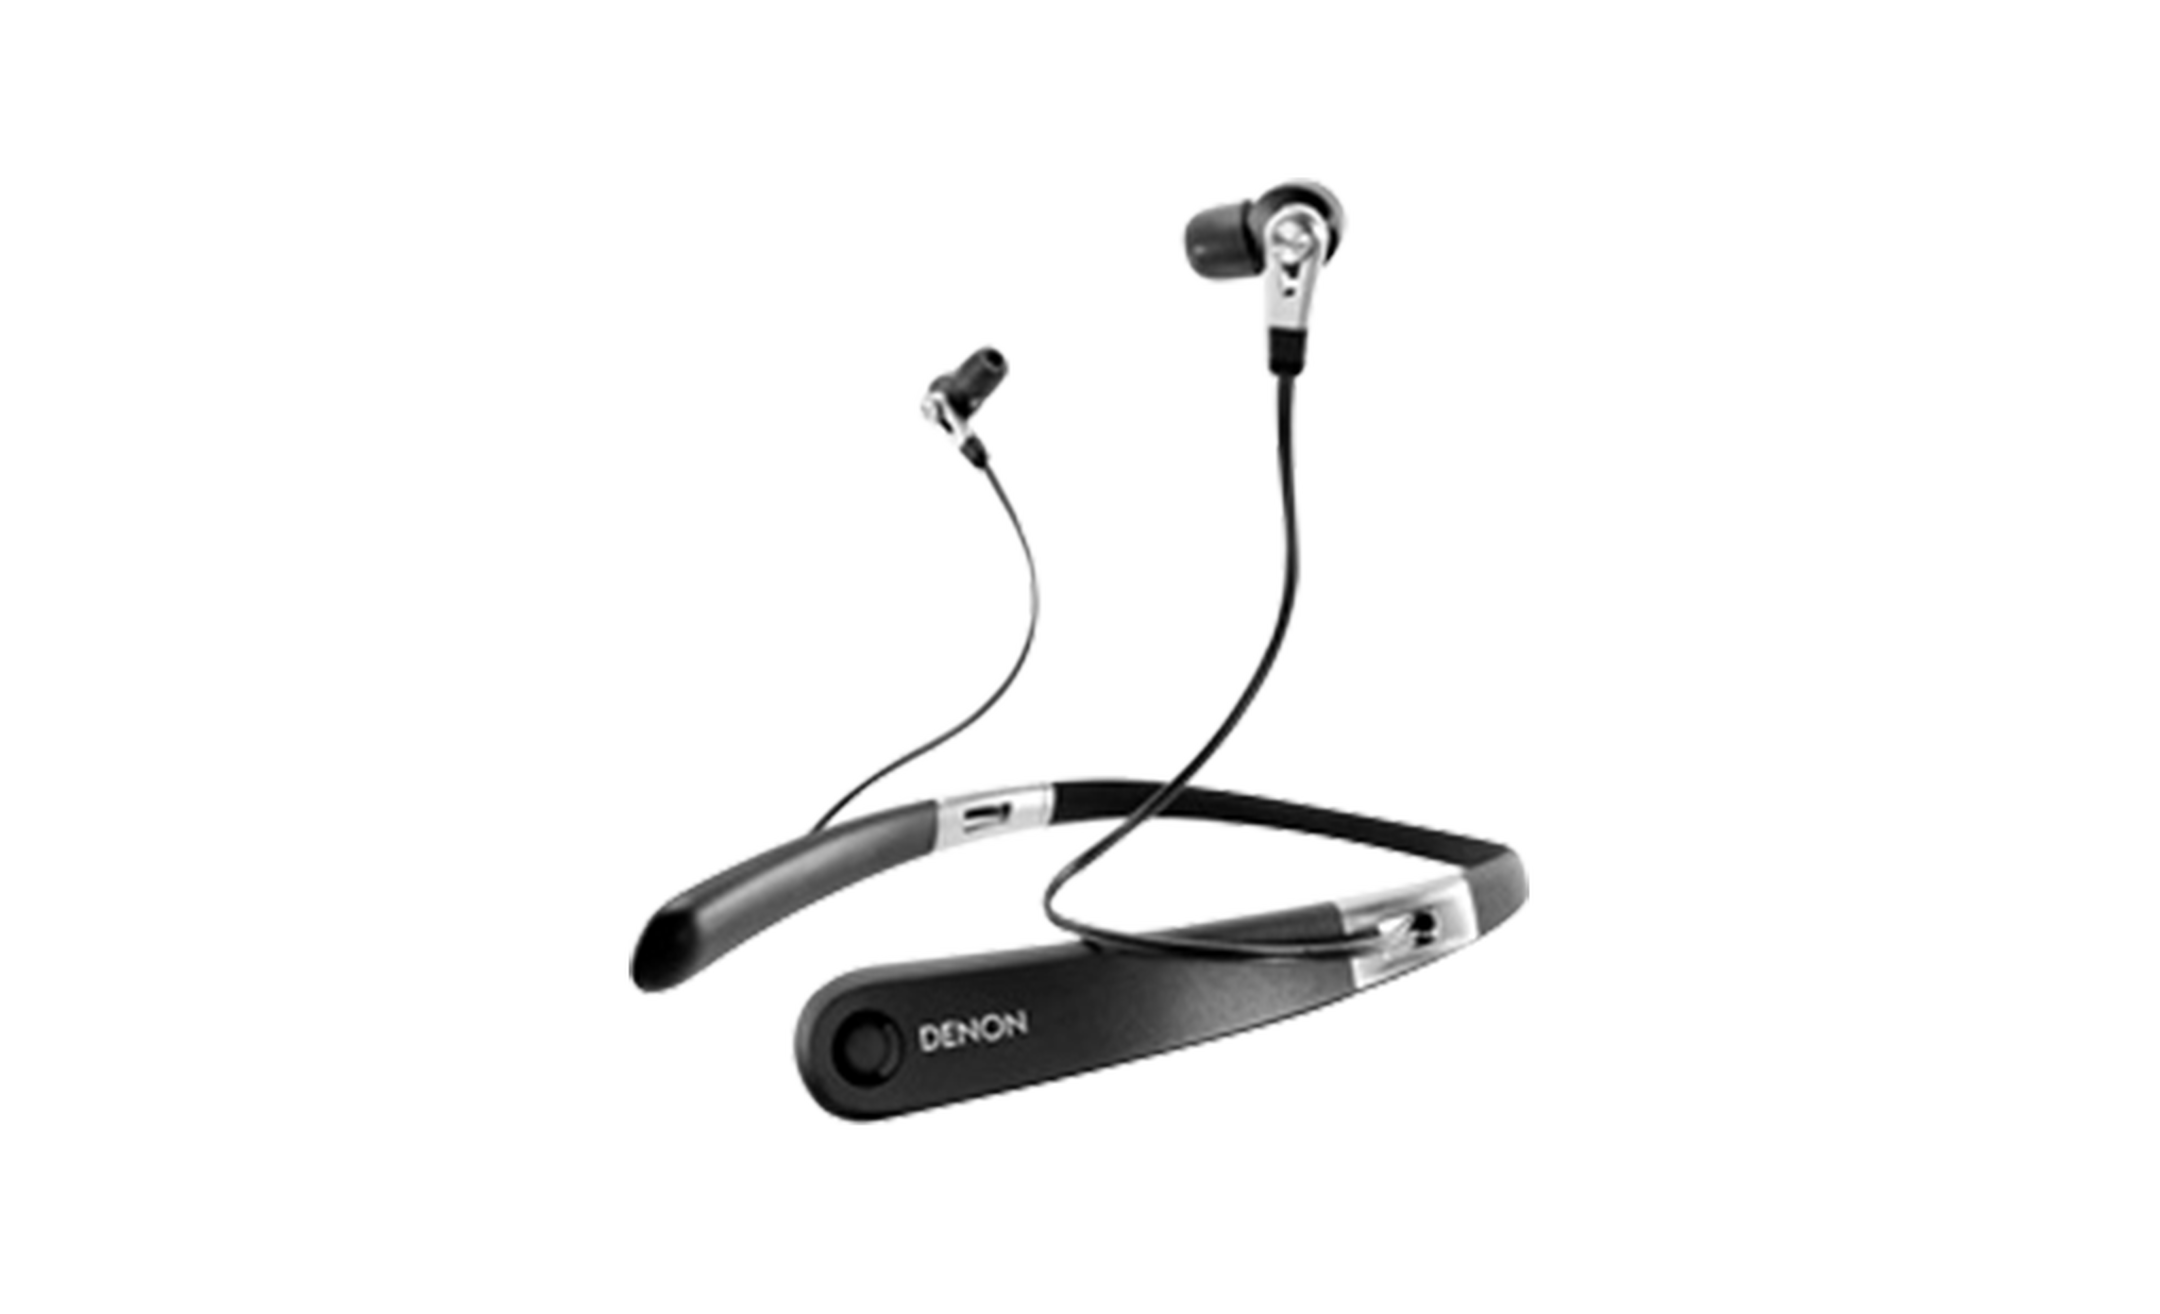 Minimaal weerstand bieden Kaap AH-C820W - Wireless neckband In-Ear Headphones | Denon - US